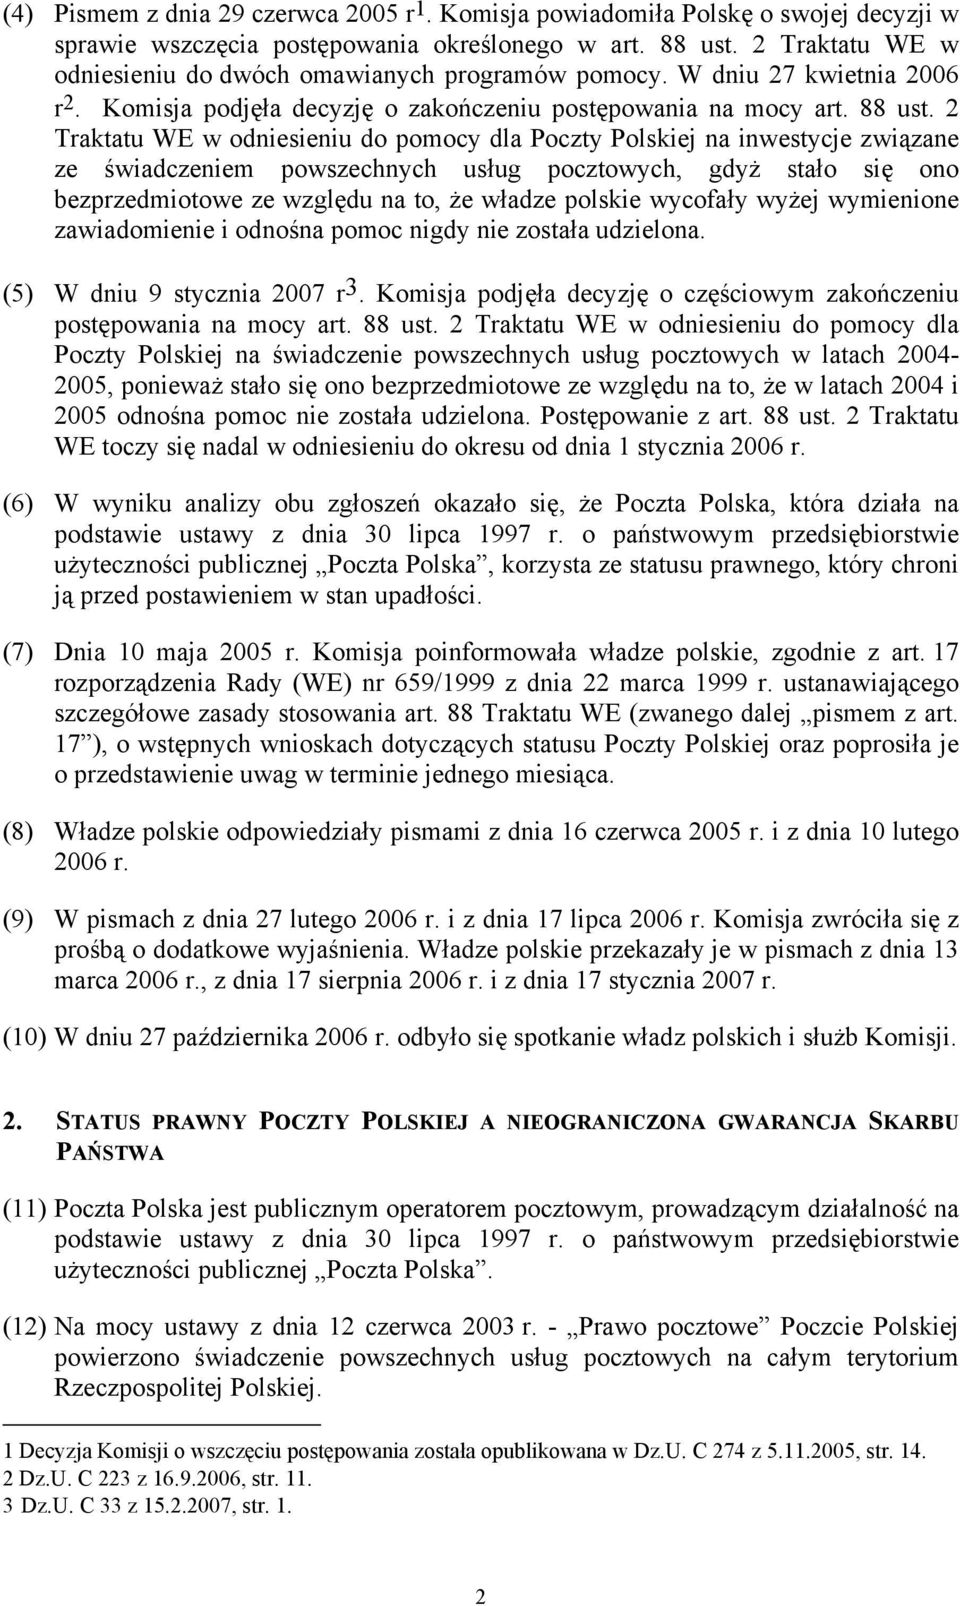 2 Traktatu WE w odniesieniu do pomocy dla Poczty Polskiej na inwestycje związane ze świadczeniem powszechnych usług pocztowych, gdyż stało się ono bezprzedmiotowe ze względu na to, że władze polskie